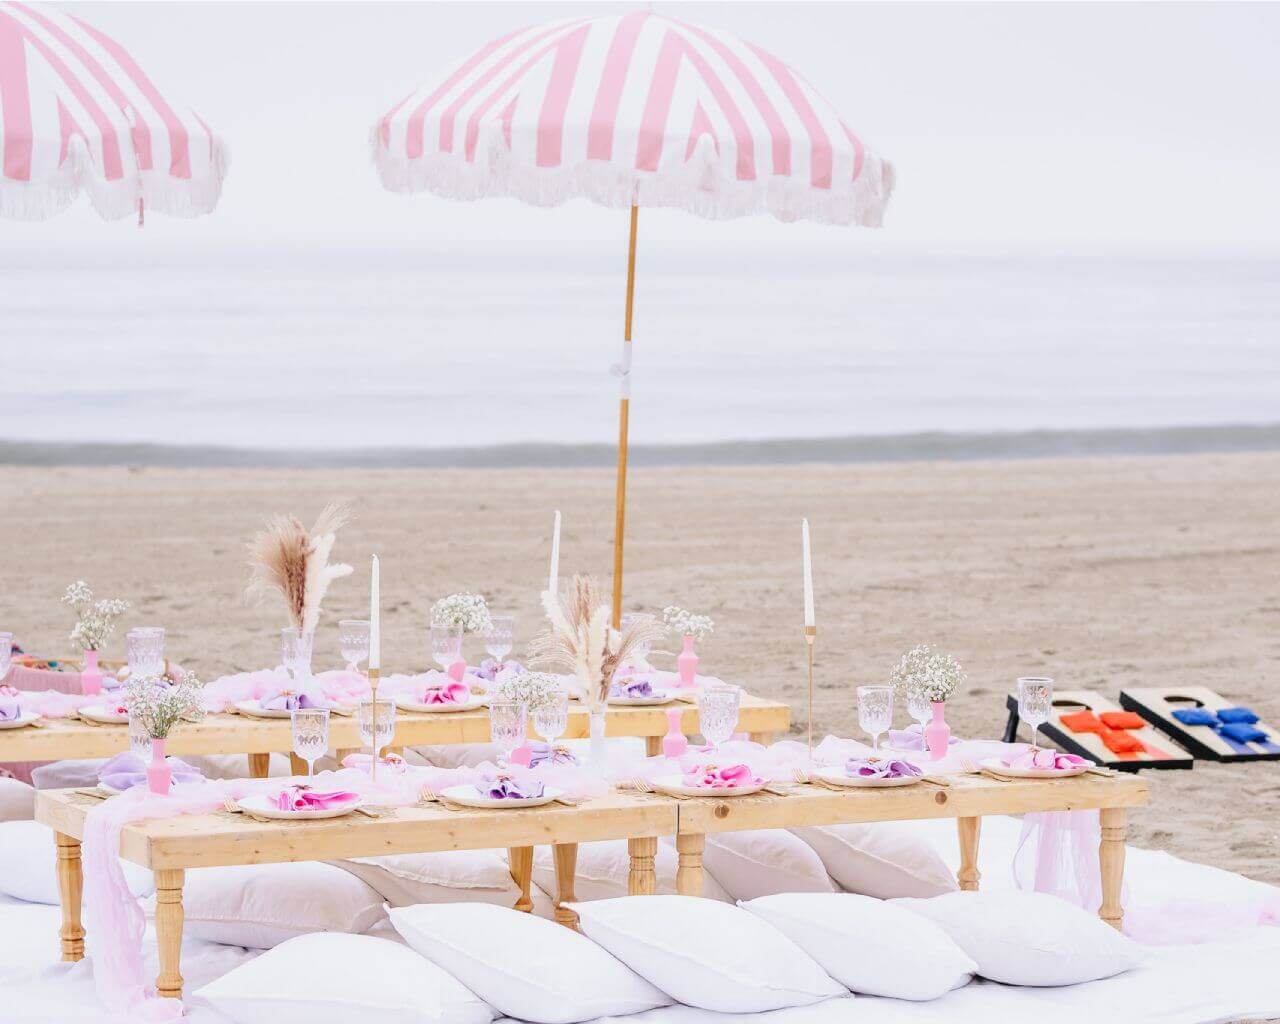 Huntington Beach luxury picnic company